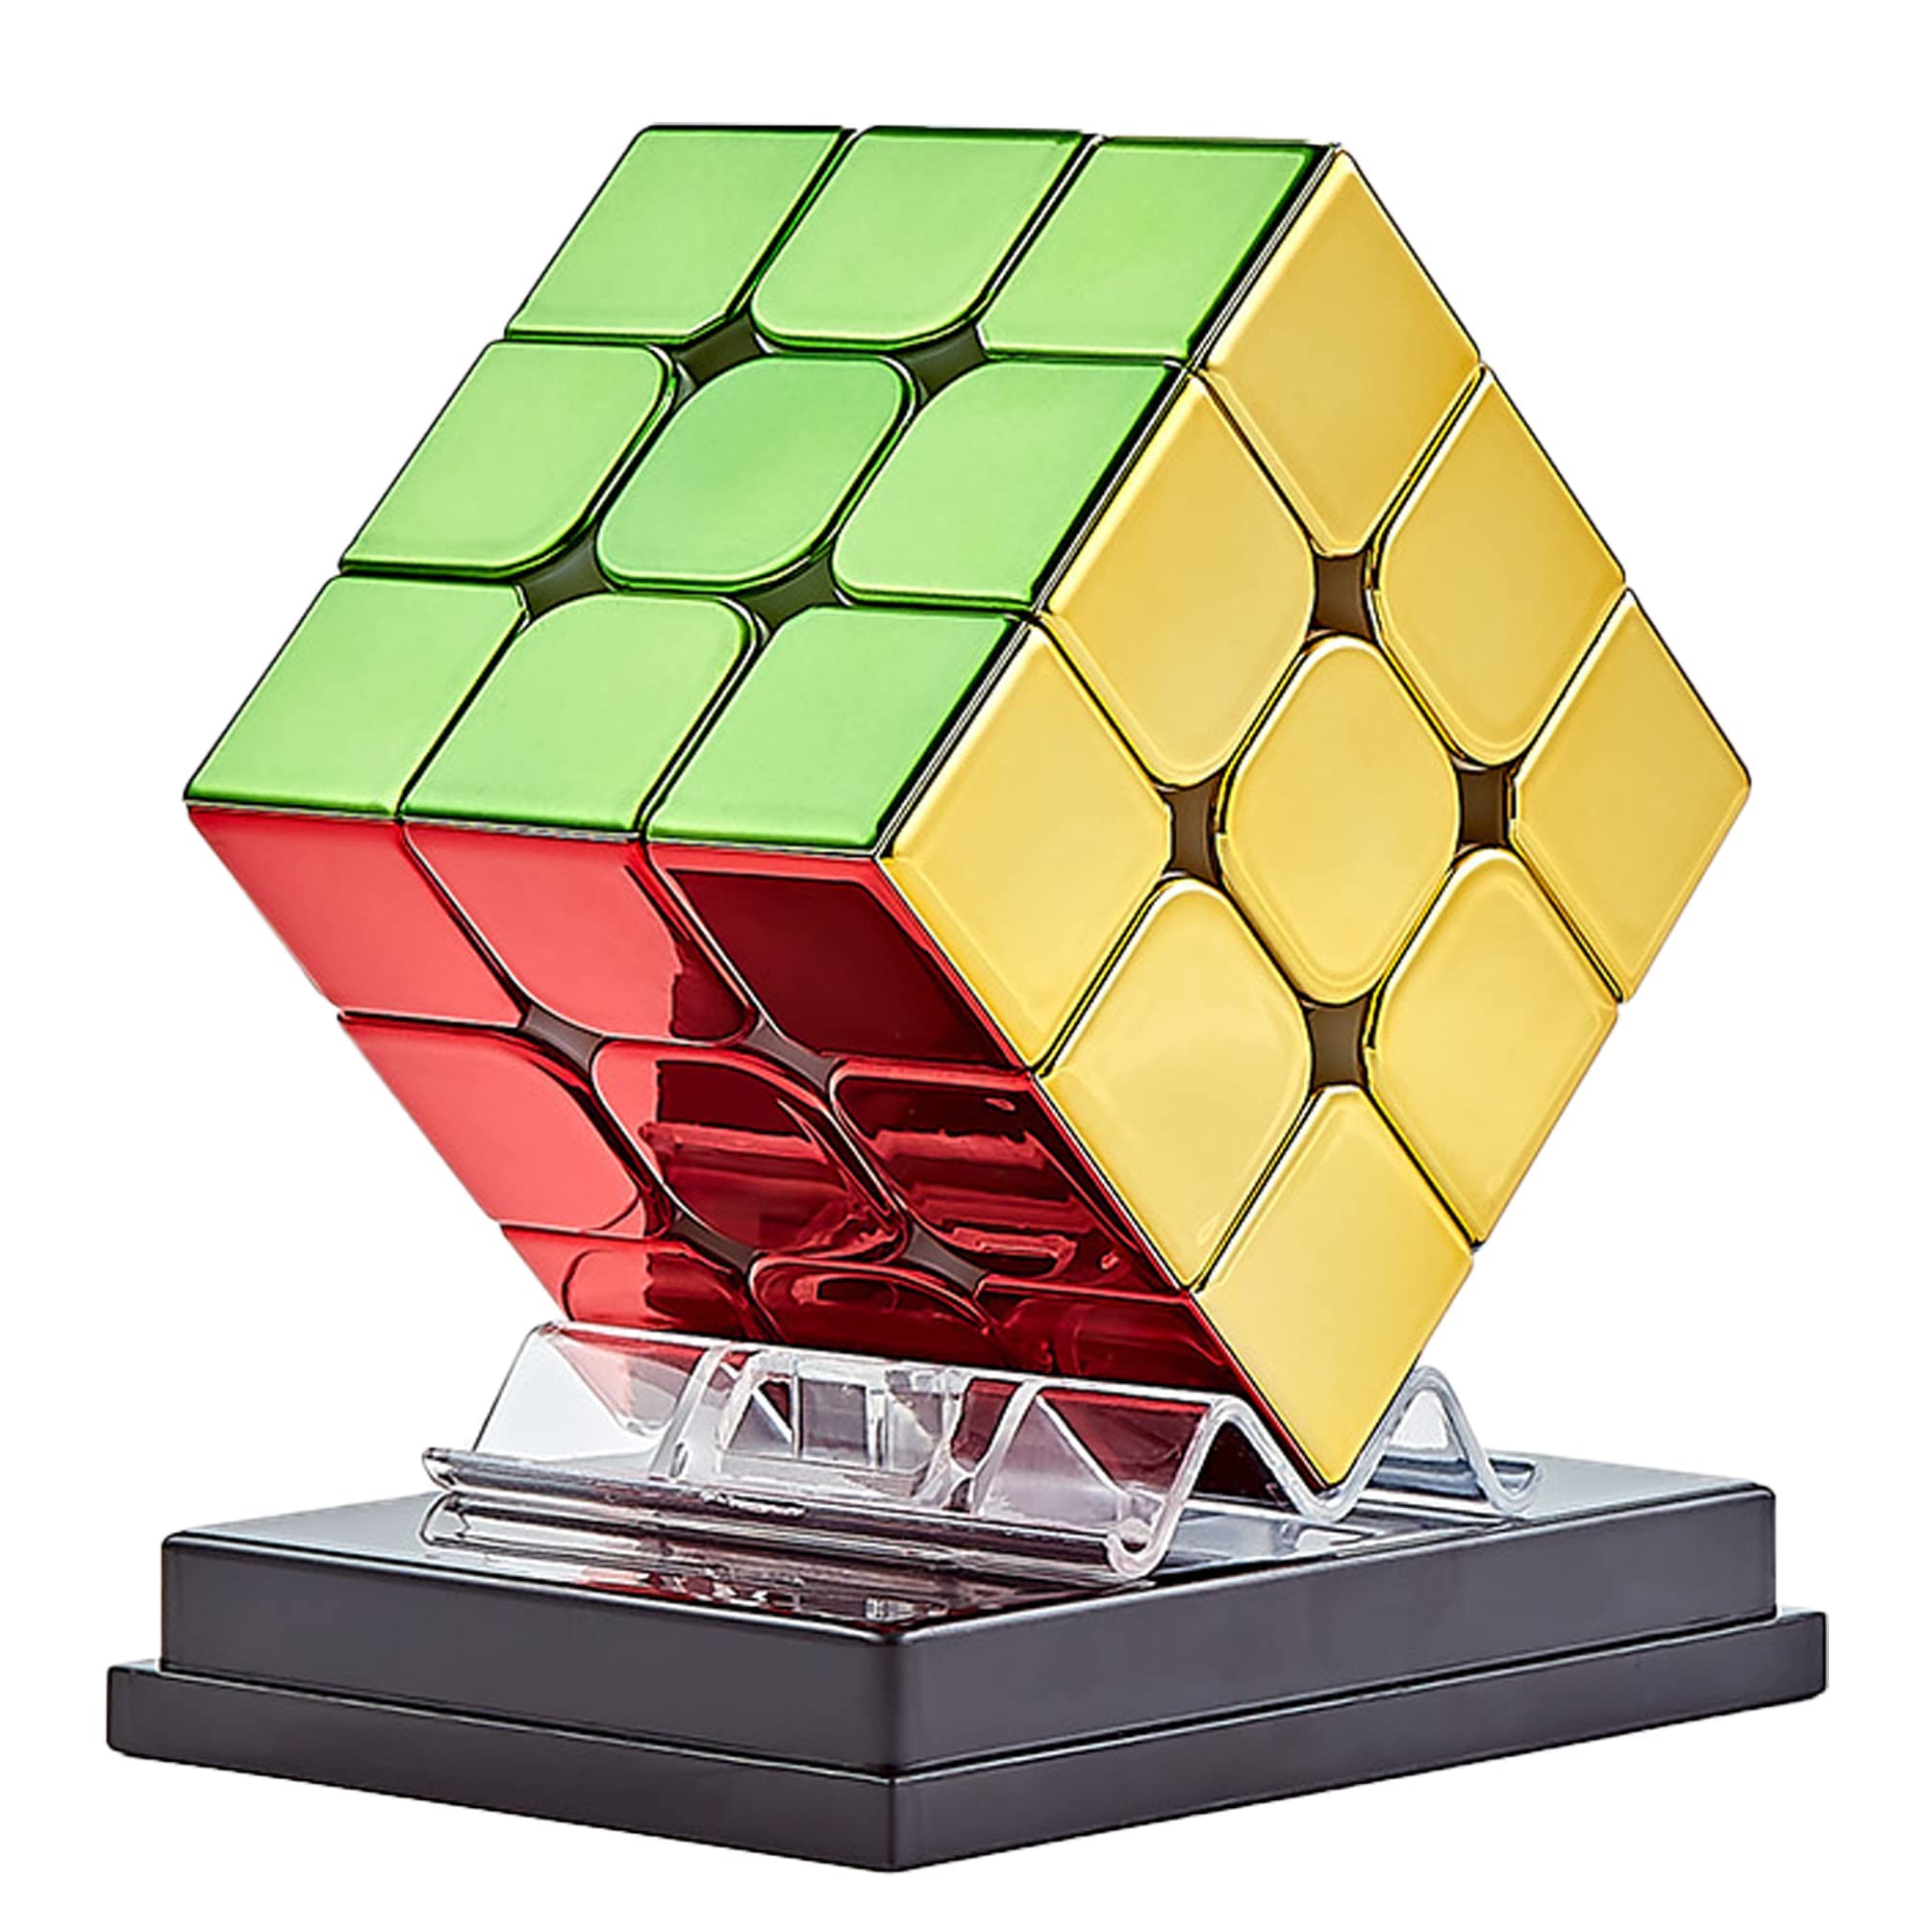 マジックキューブ メタリック 3x3 魔方【磁石内蔵】ステッカーレス 3x3x3 魔方 競技用キューブ 立体パズル 回転スム…